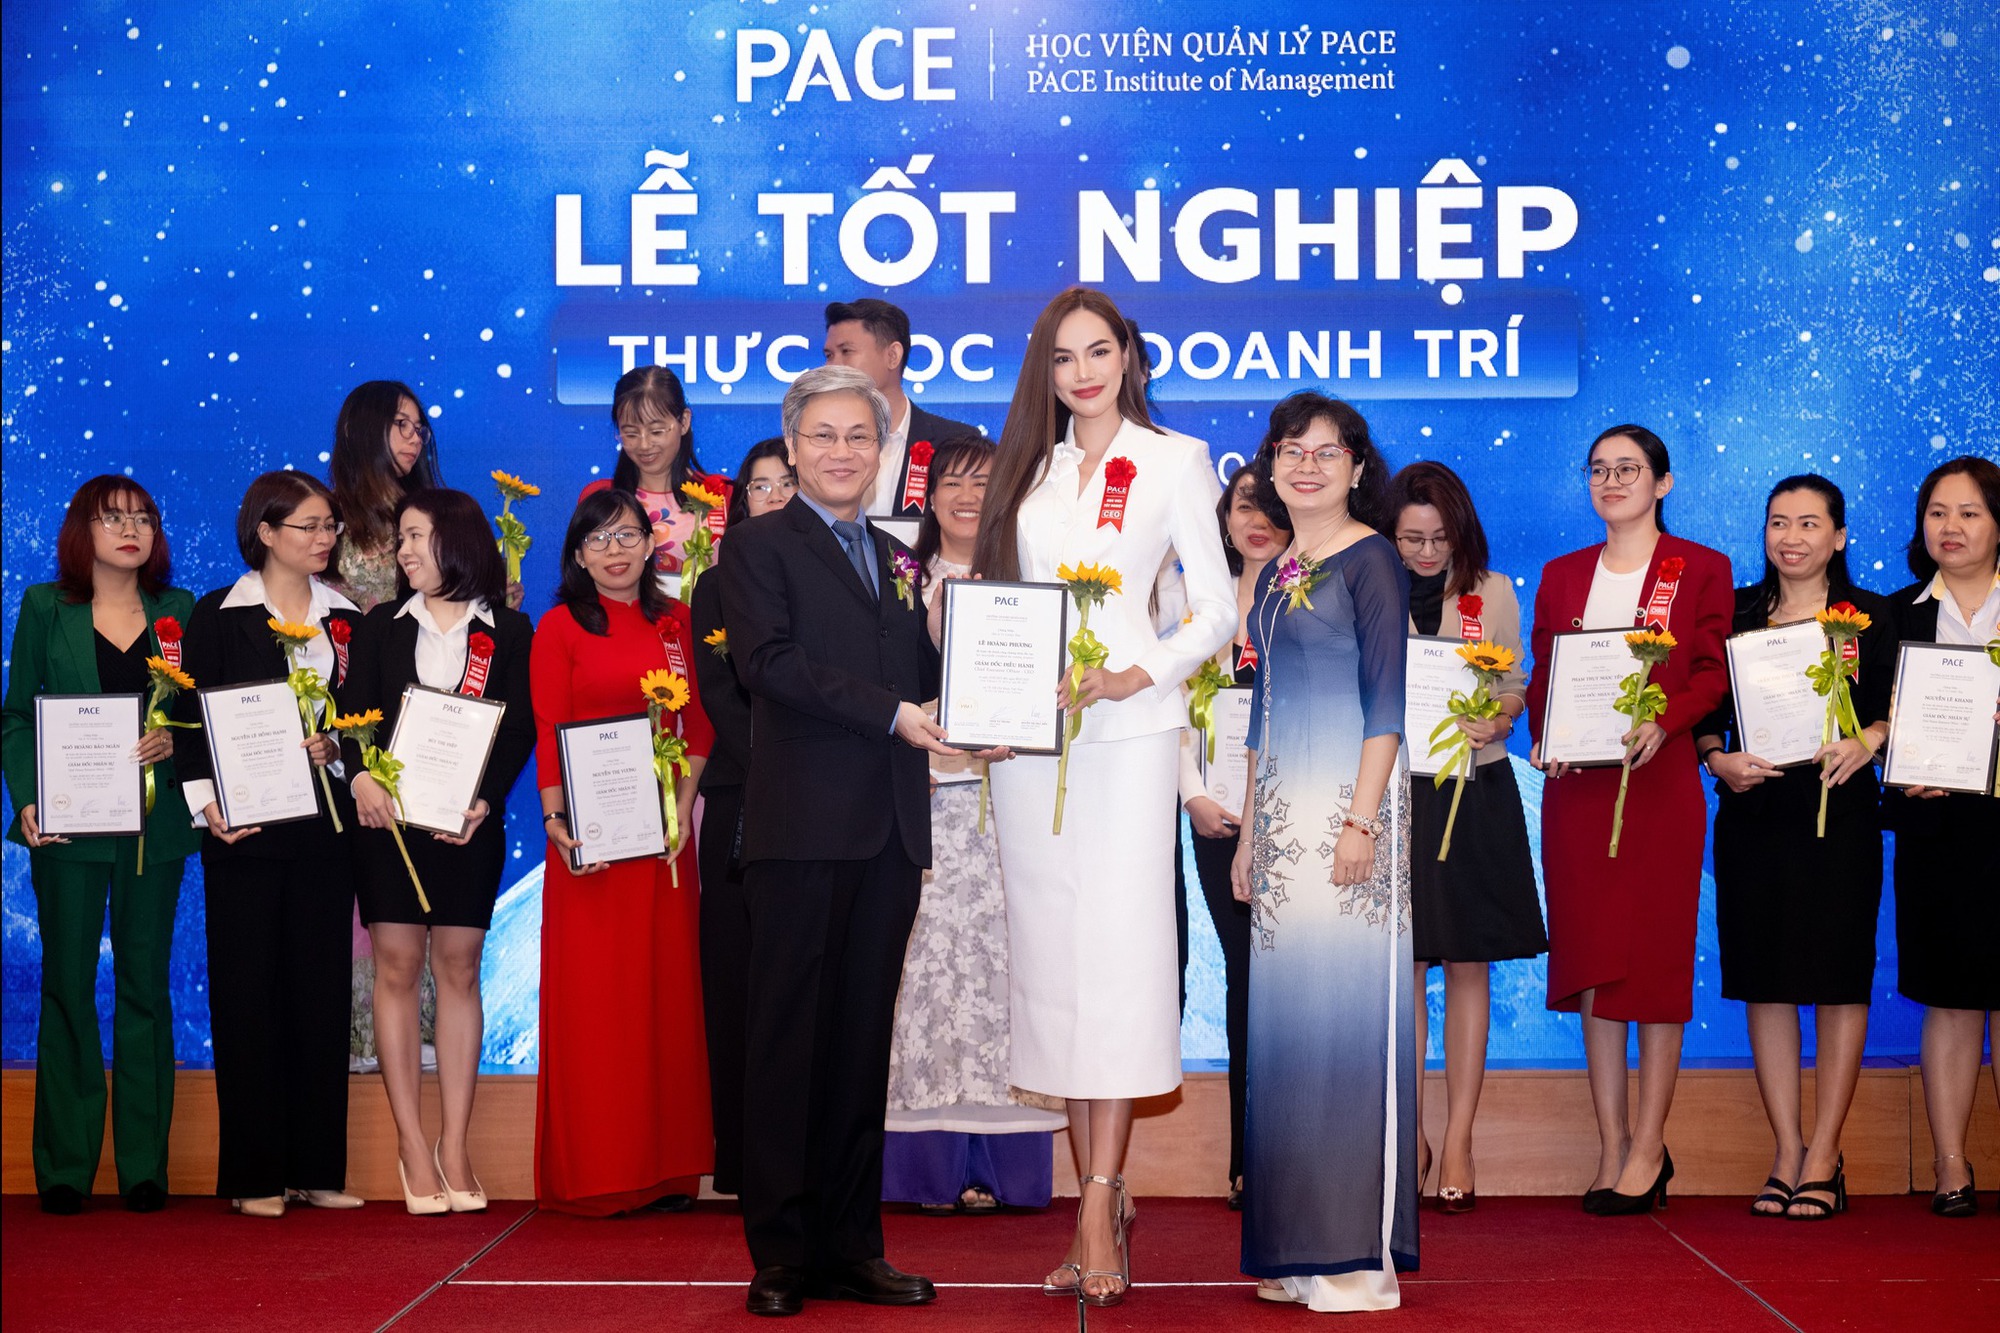 Ngọc Hằng đội vương miện á hậu 2 quốc tế trở về, Lê Hoàng Phương nhận bằng tốt nghiệp  - Ảnh 10.